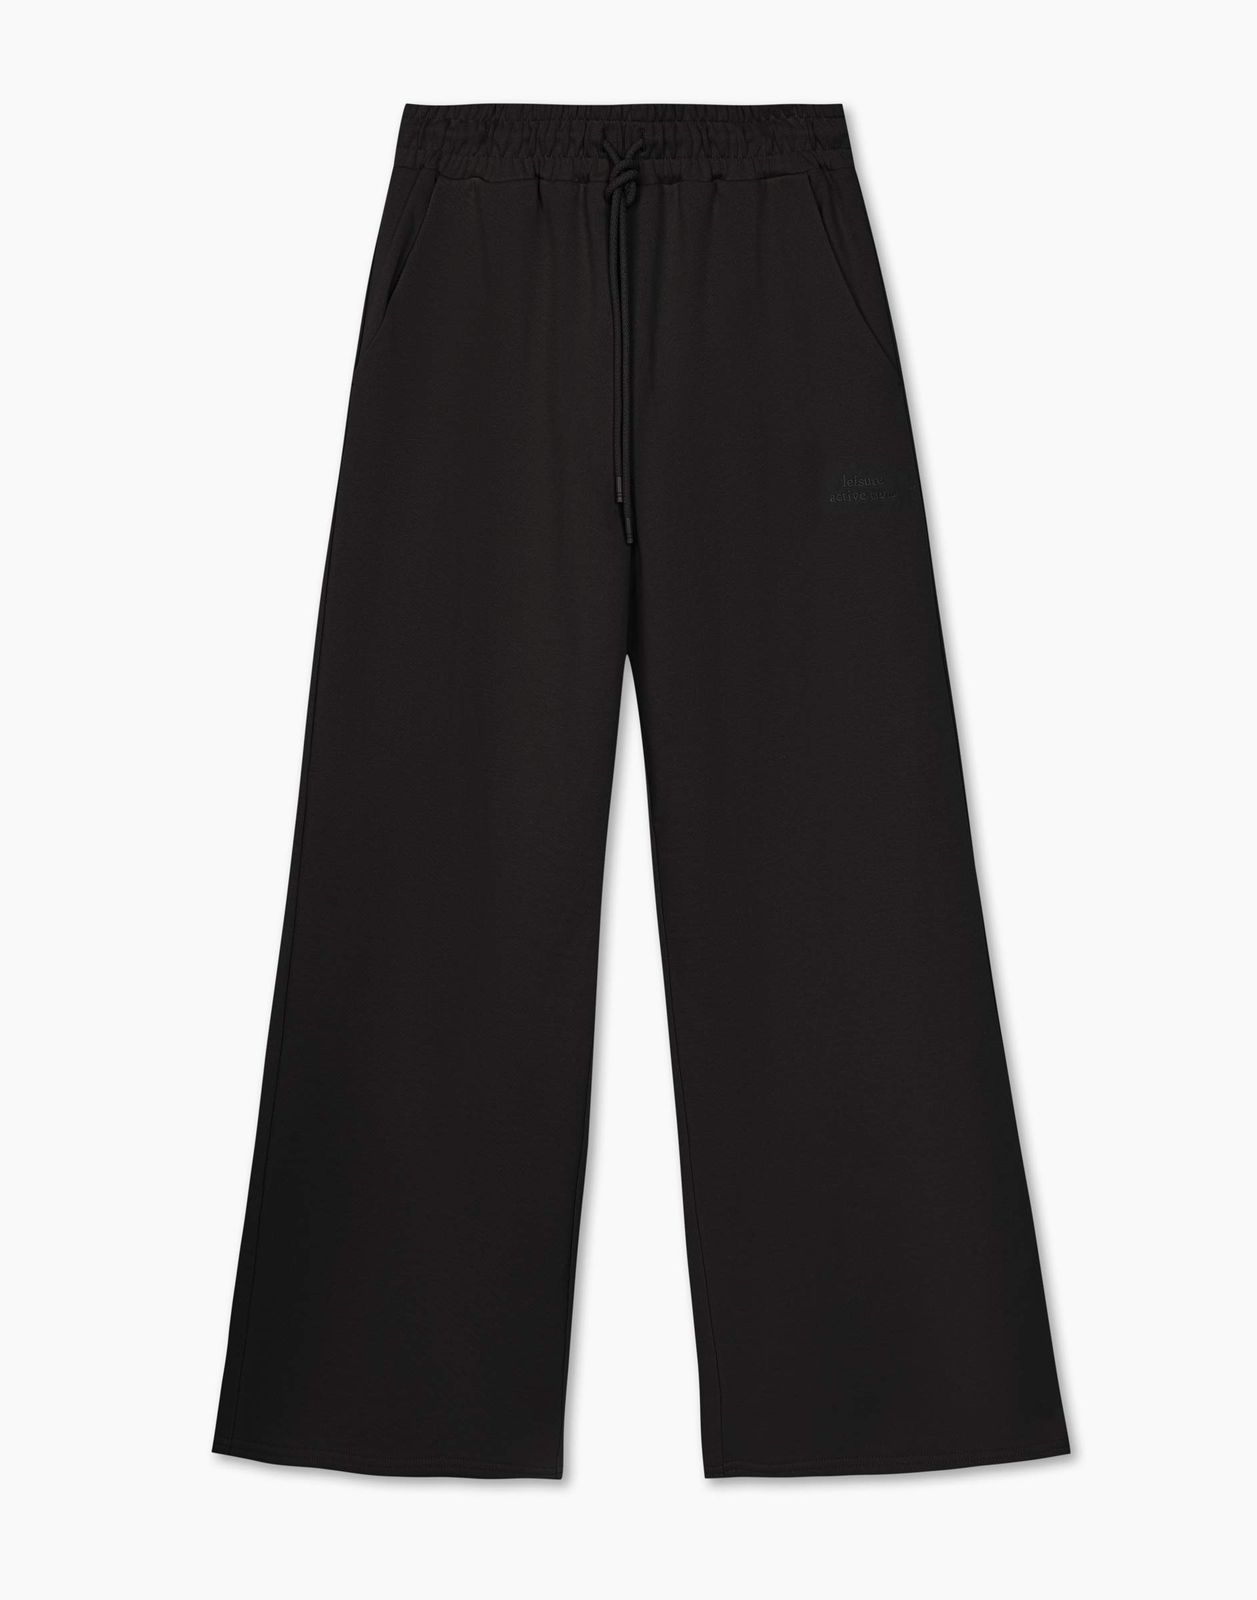 Спортивные брюки женские Gloria Jeans GAC022346 черные L/170 (48-50)